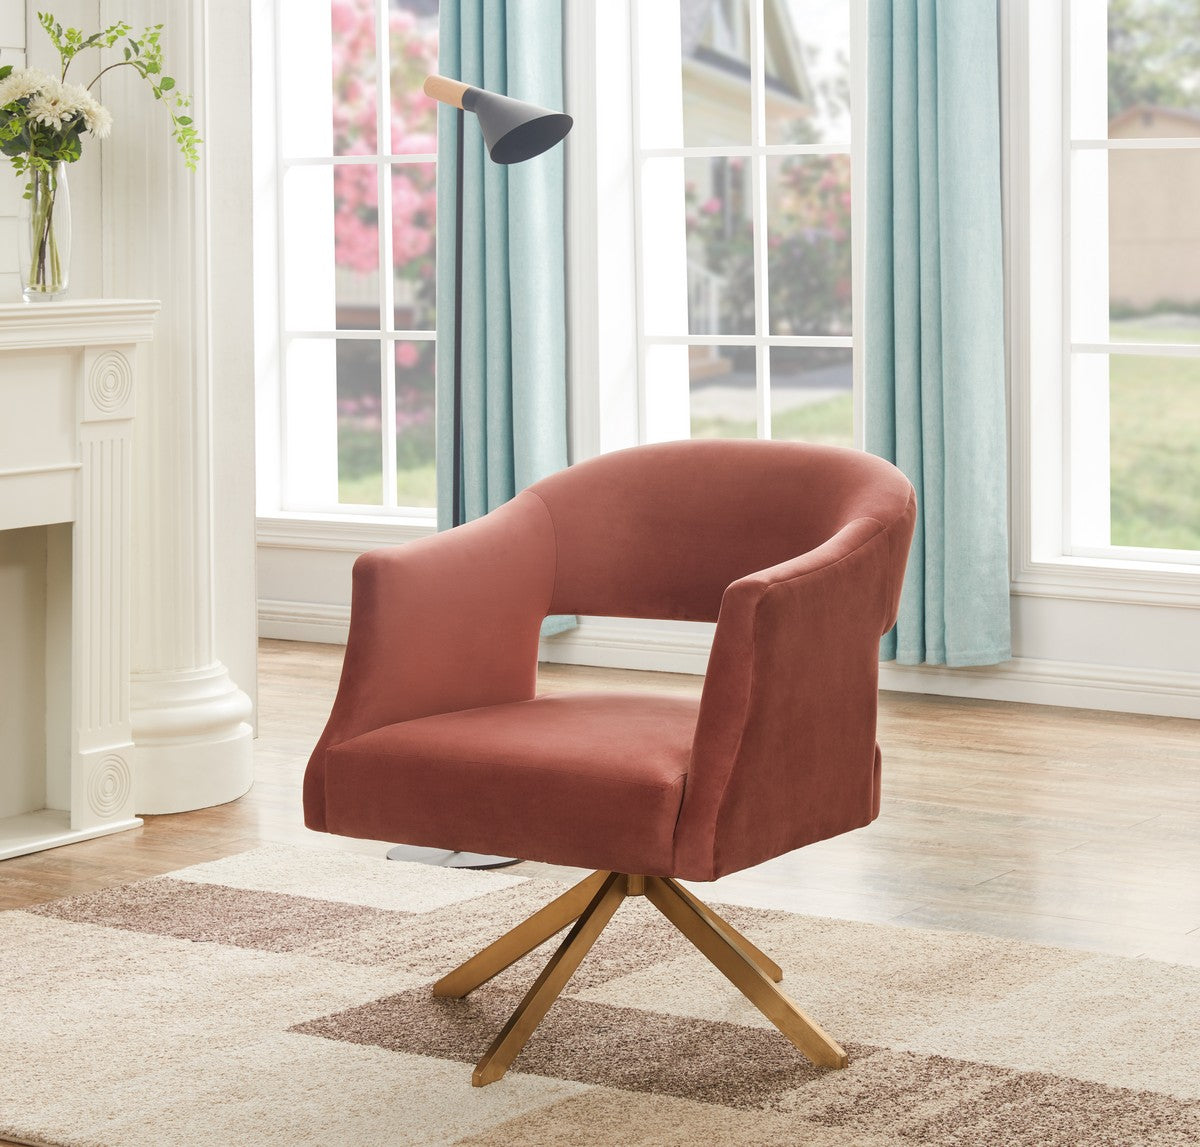 Cool Modern Chair - Quartz Armchair